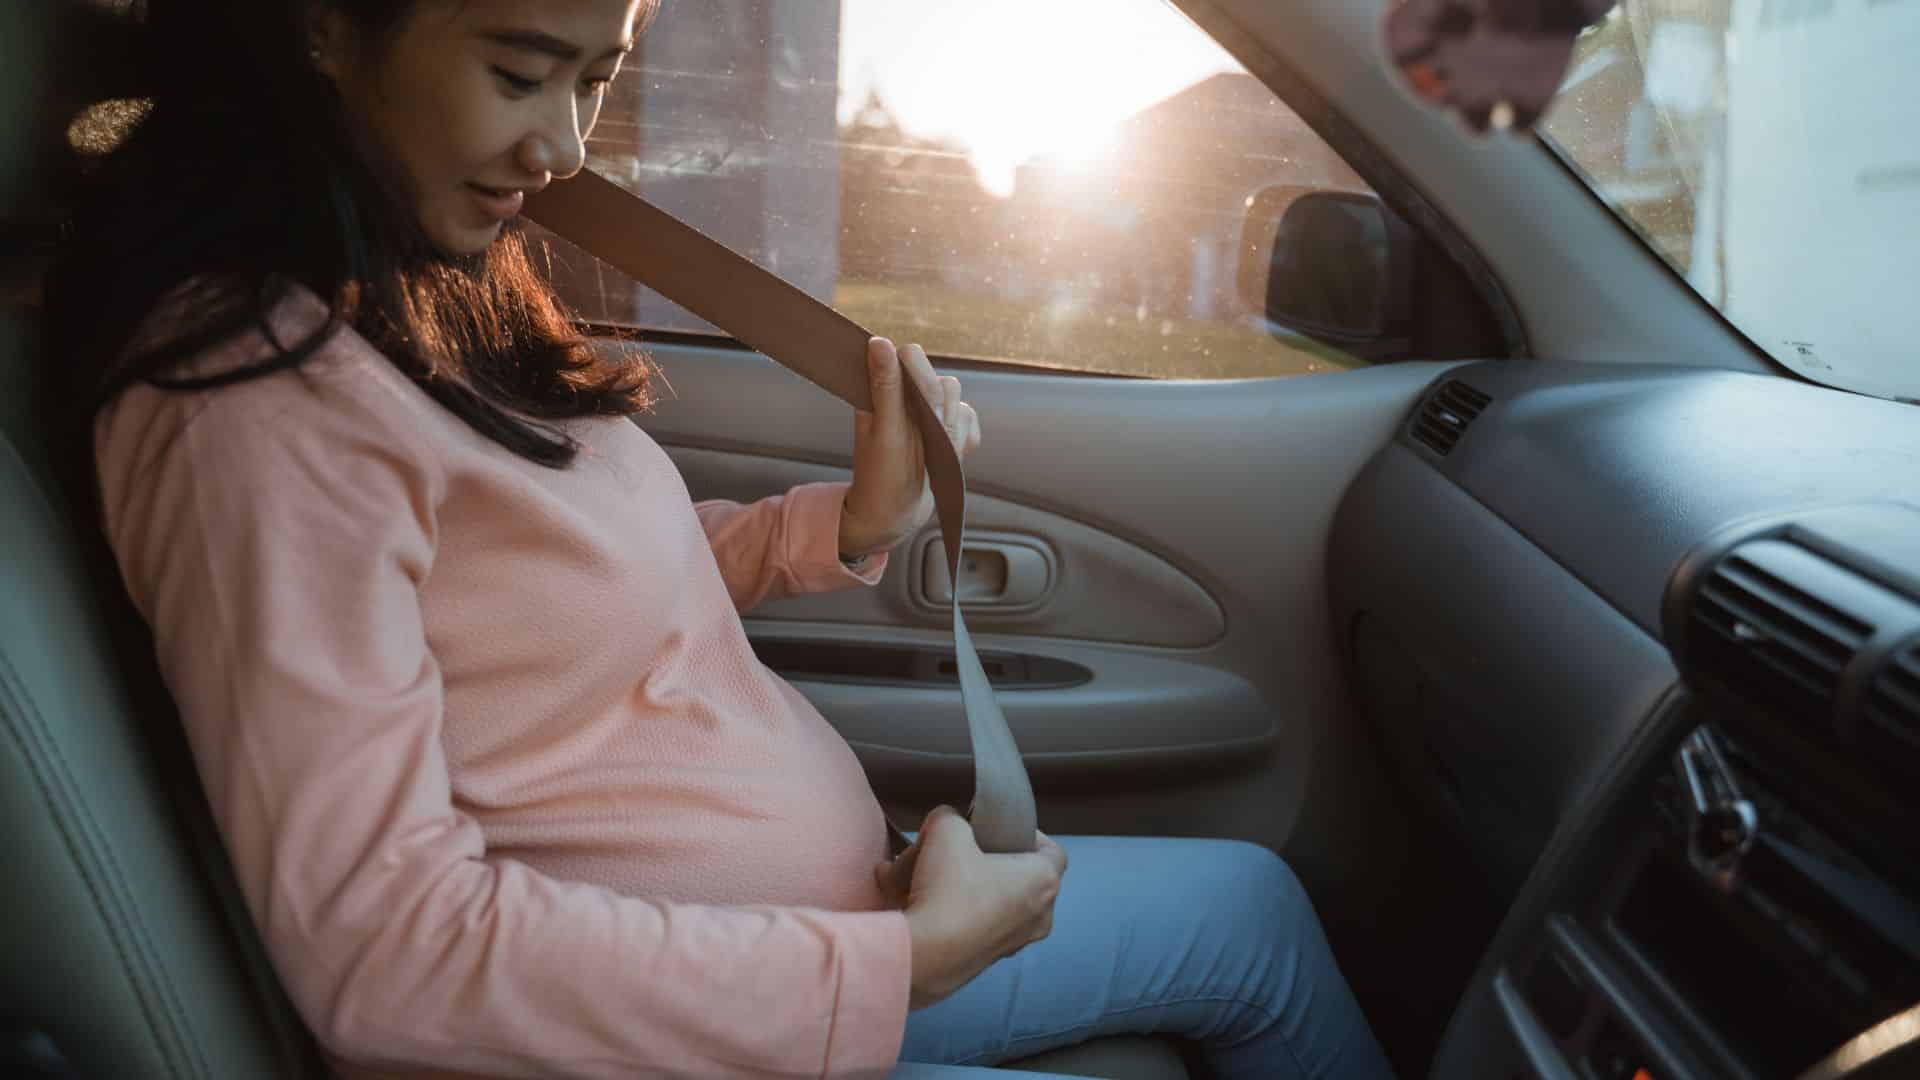 Fetal Death in car